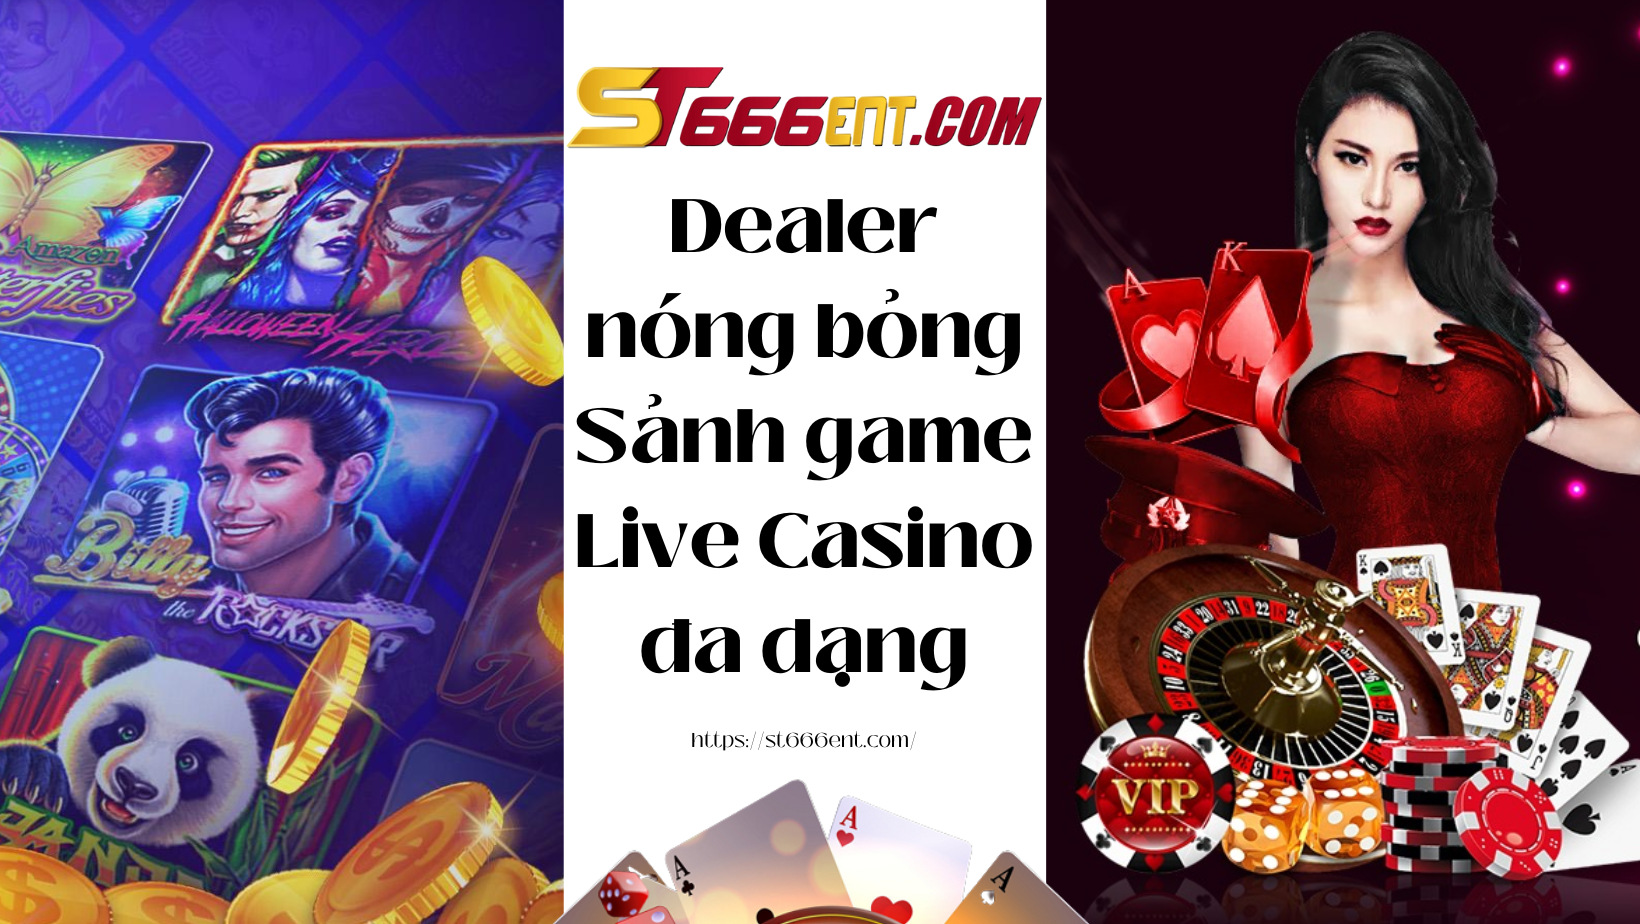 Dealer nóng bỏng đi cùng sảnh game Live Casino đa dạng